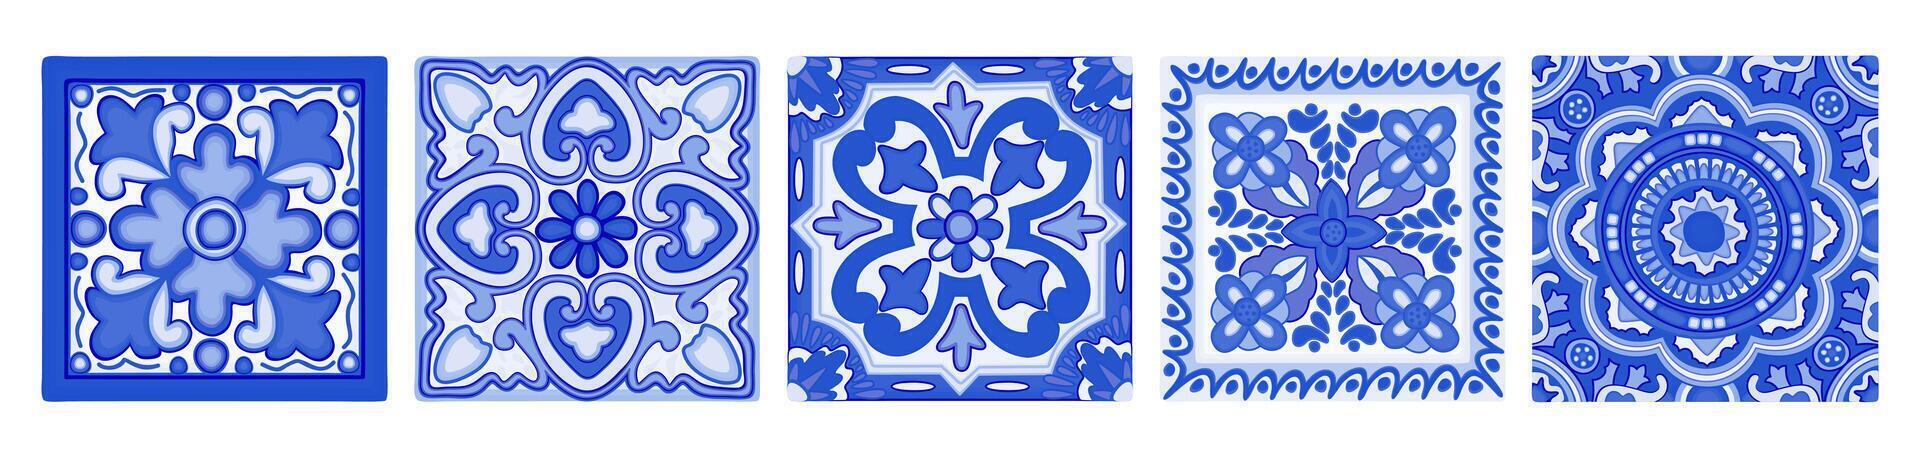 Mittelmeer Fliesen. azulejo dekorativ Kunst. Vektor einstellen isoliert auf Weiß Hintergrund